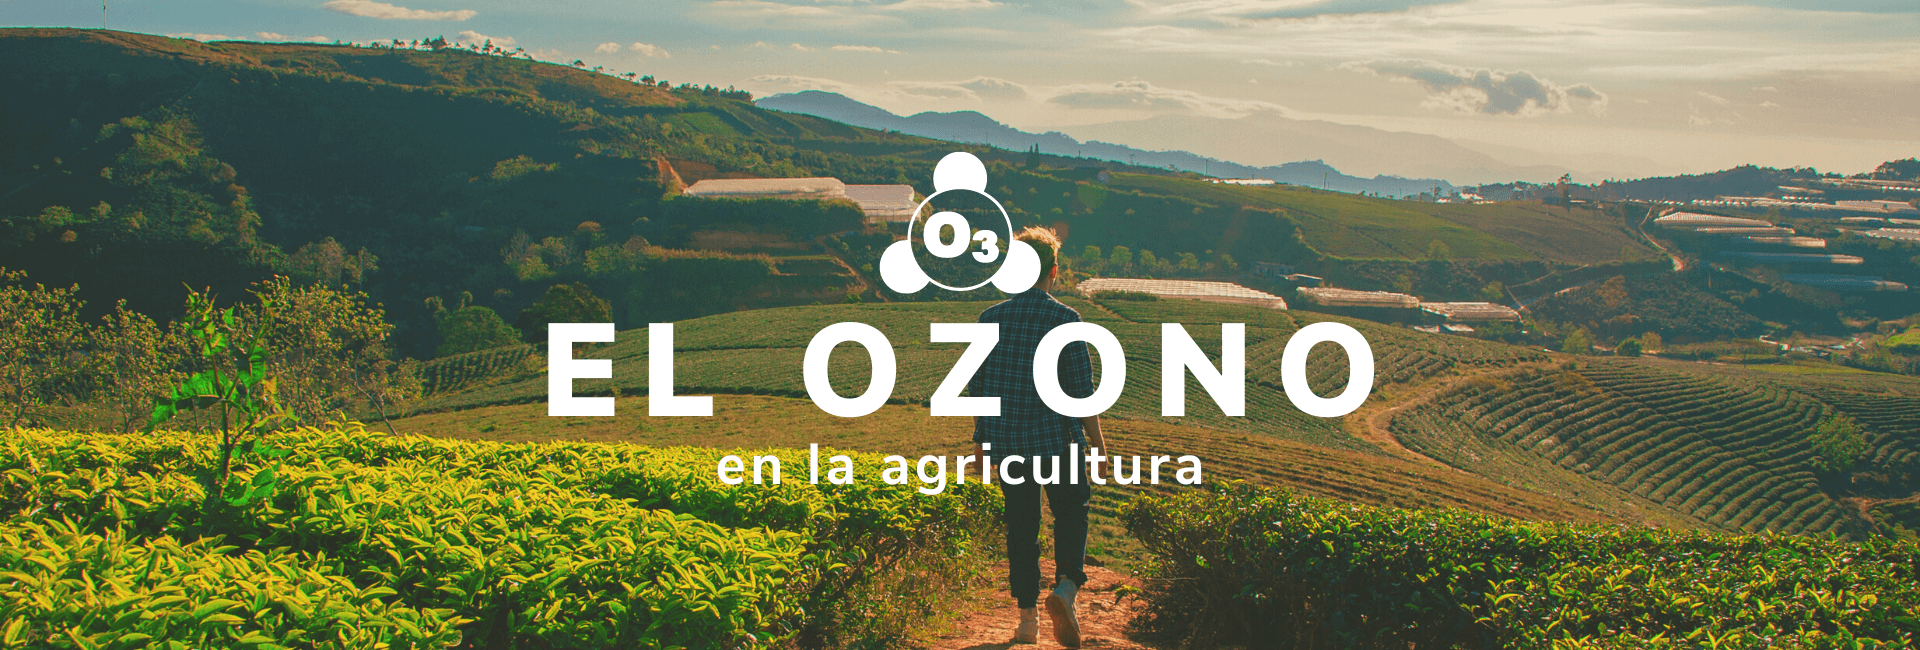 Soluciones de Ozono para la Agricultura